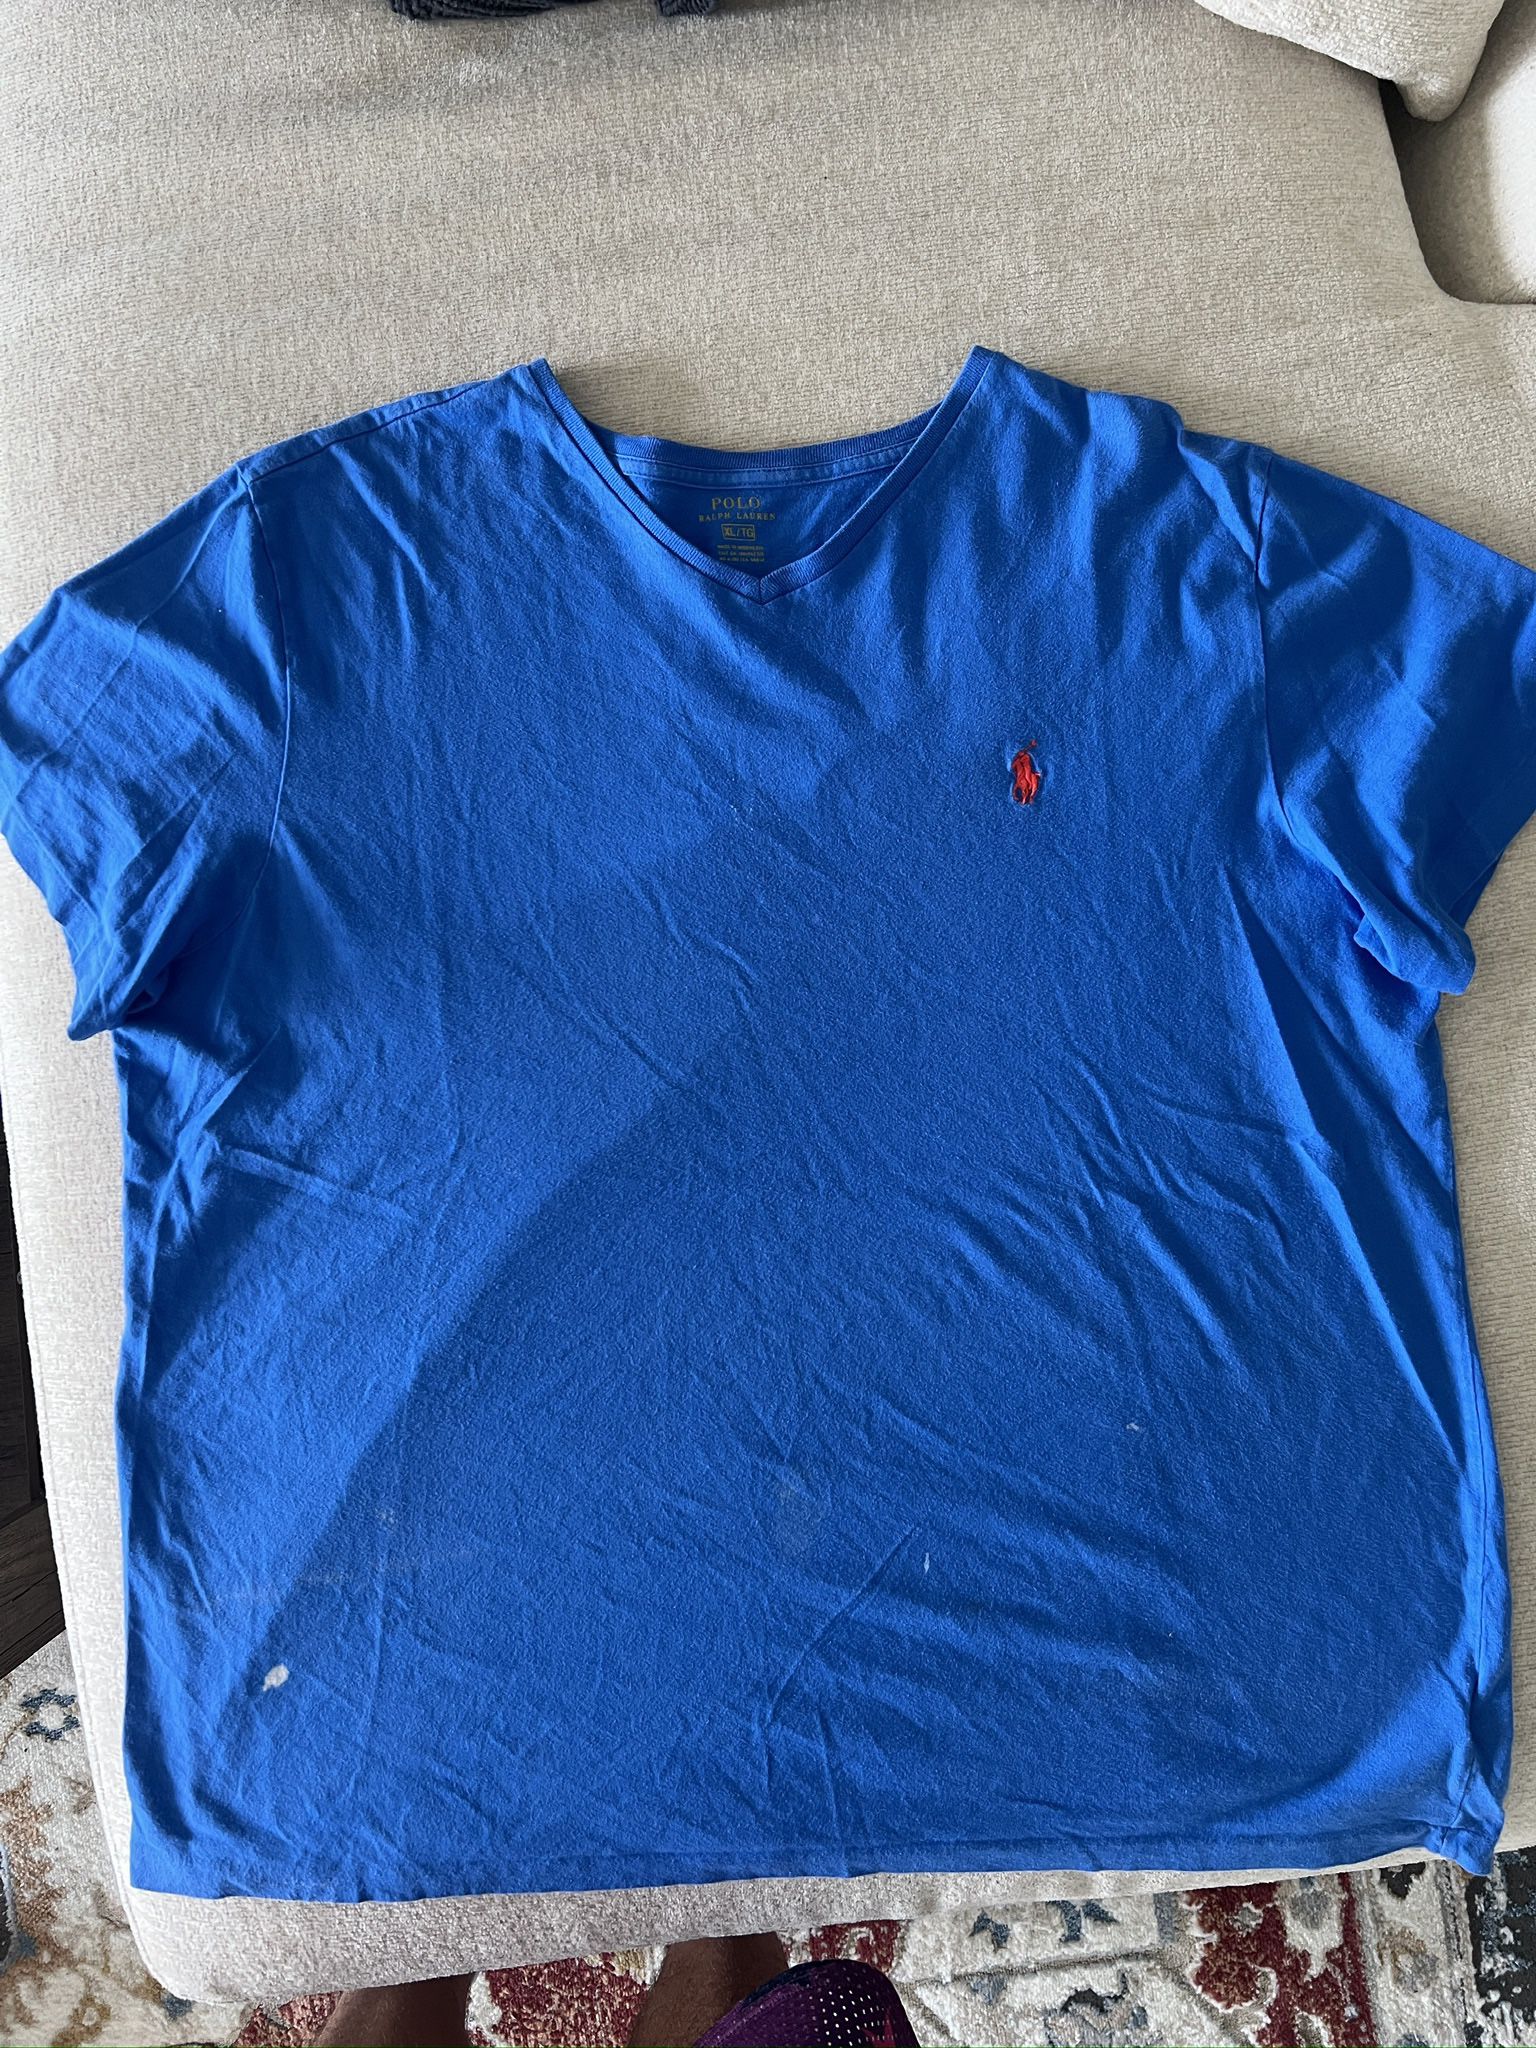 Polo Ralph Lauren Blue Red Shirt Size XL